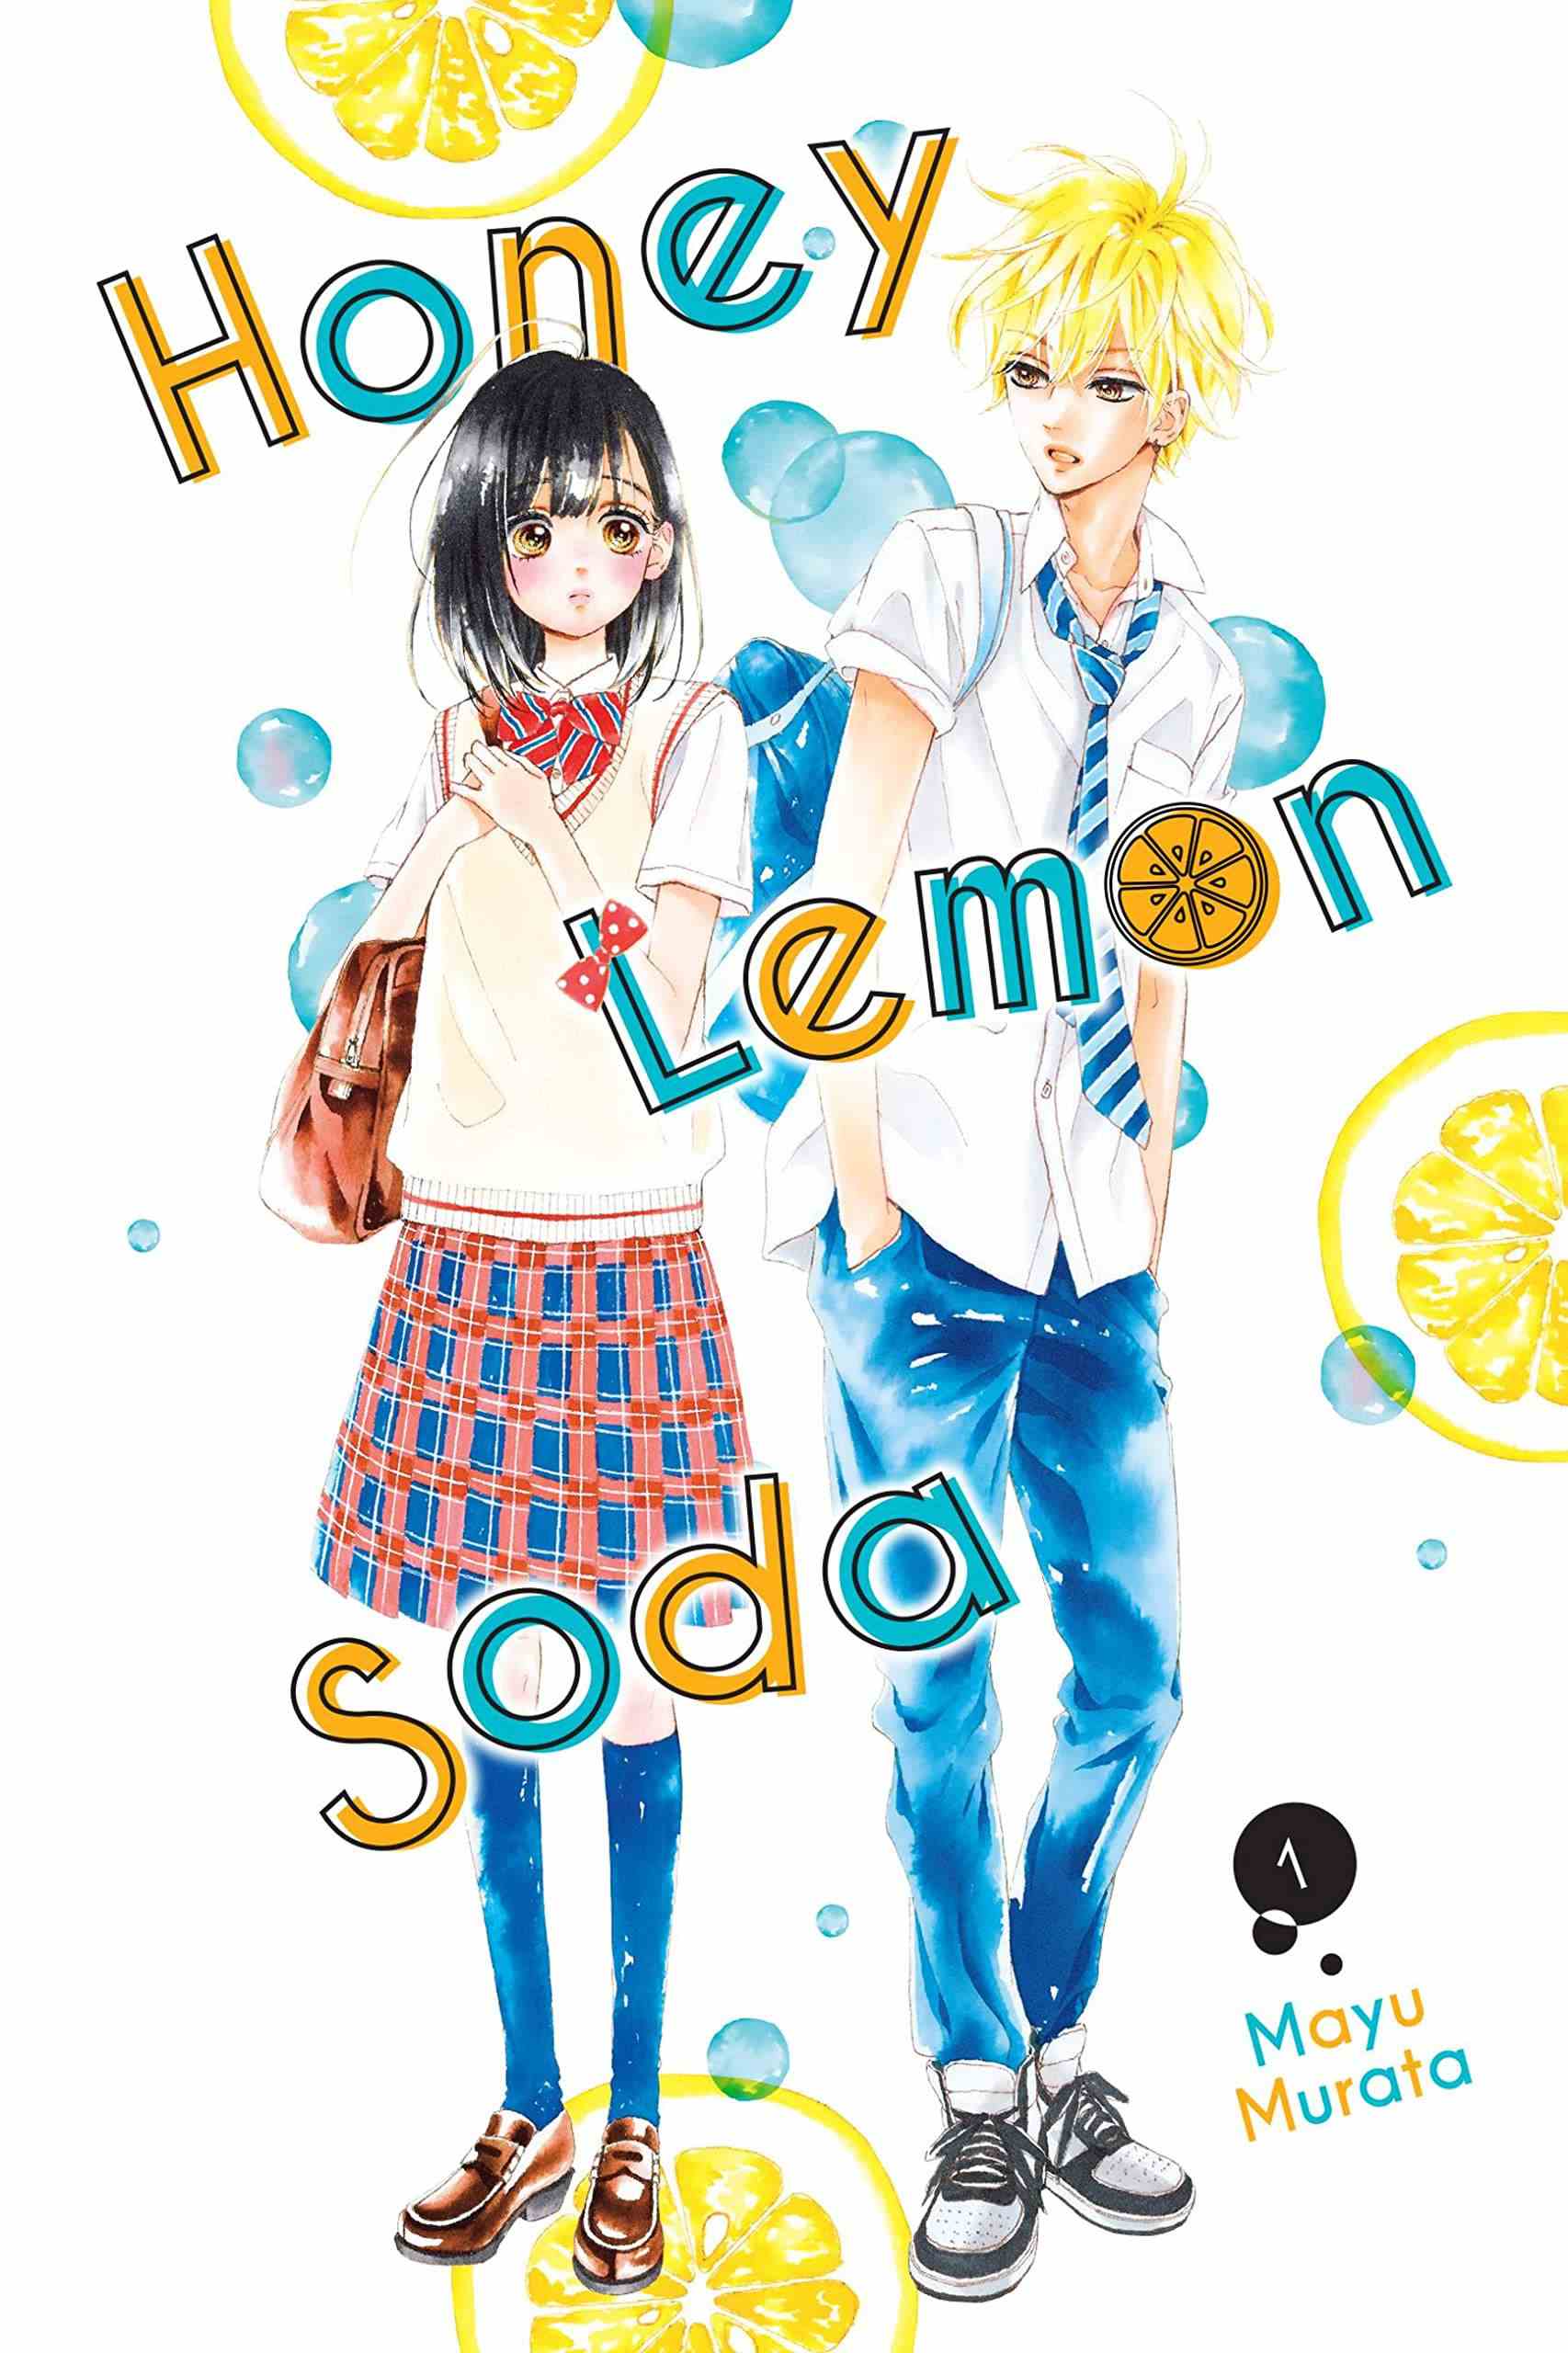 Couverture de Honey Lemon Soda par Mayu Murata